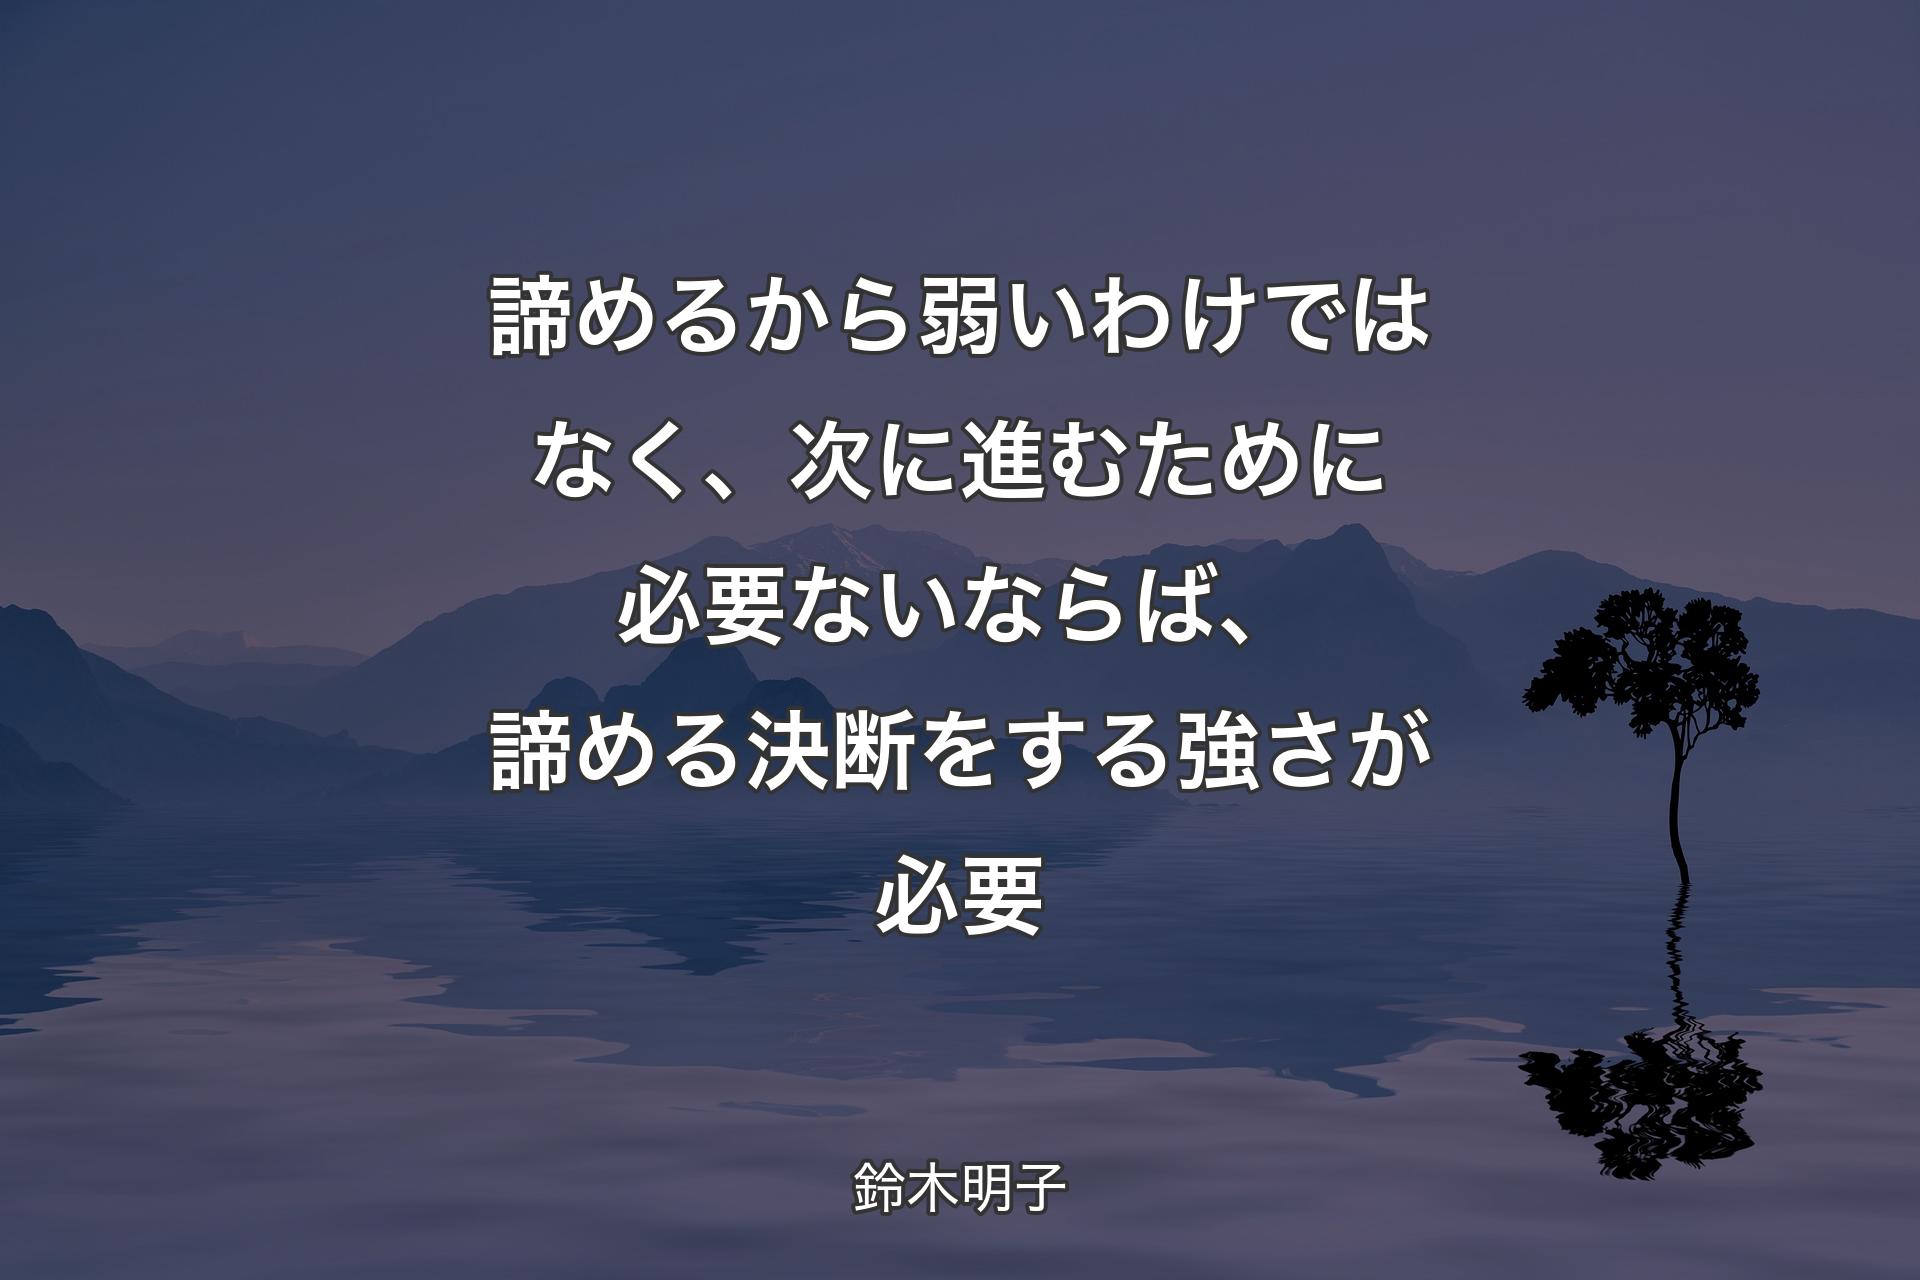 諦めるから弱いわけではなく、次に進むために必要ないならば、諦める決断をする強さが必要 - 鈴木明子